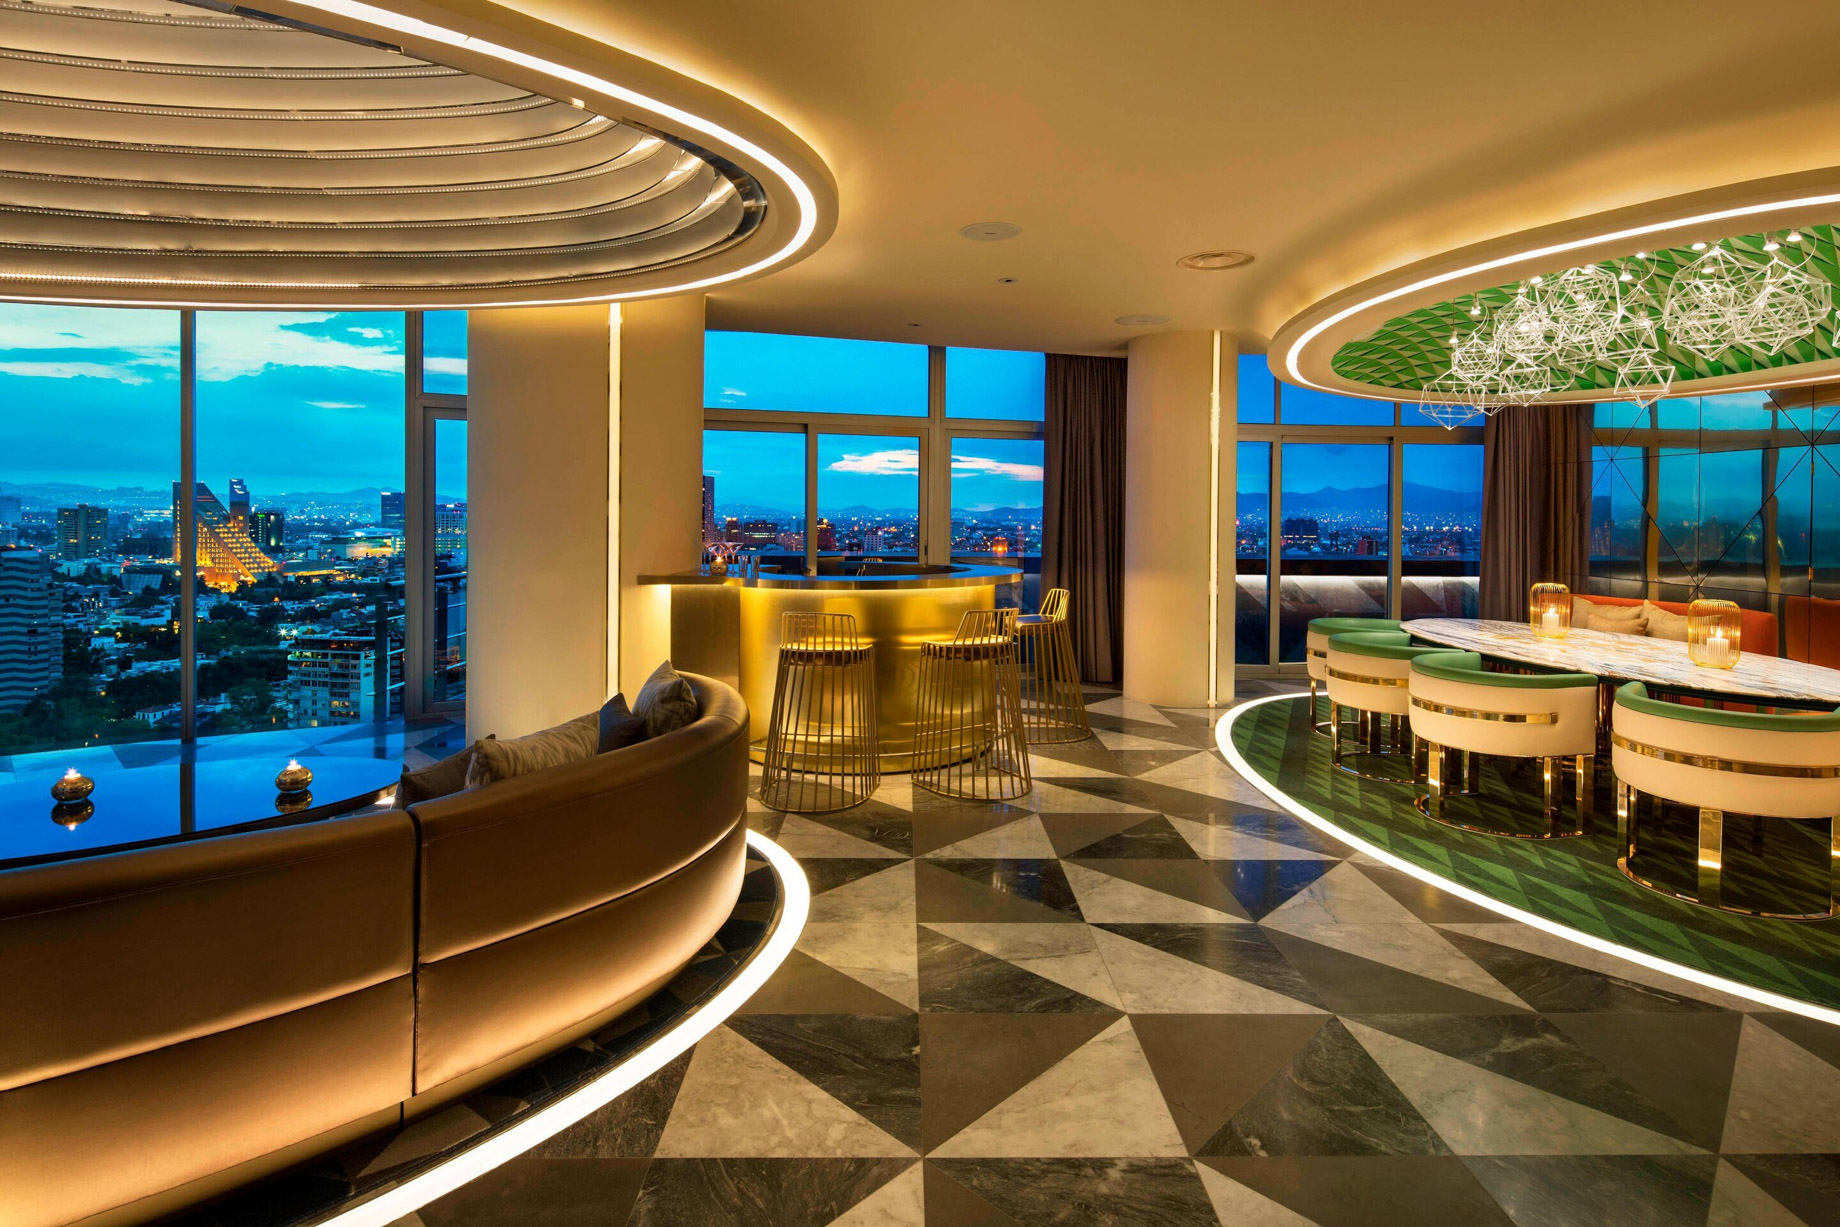 W Mexico City Hotel – Polanco, Mexico City, Mexico – E WOW Suite Dining Room Decor